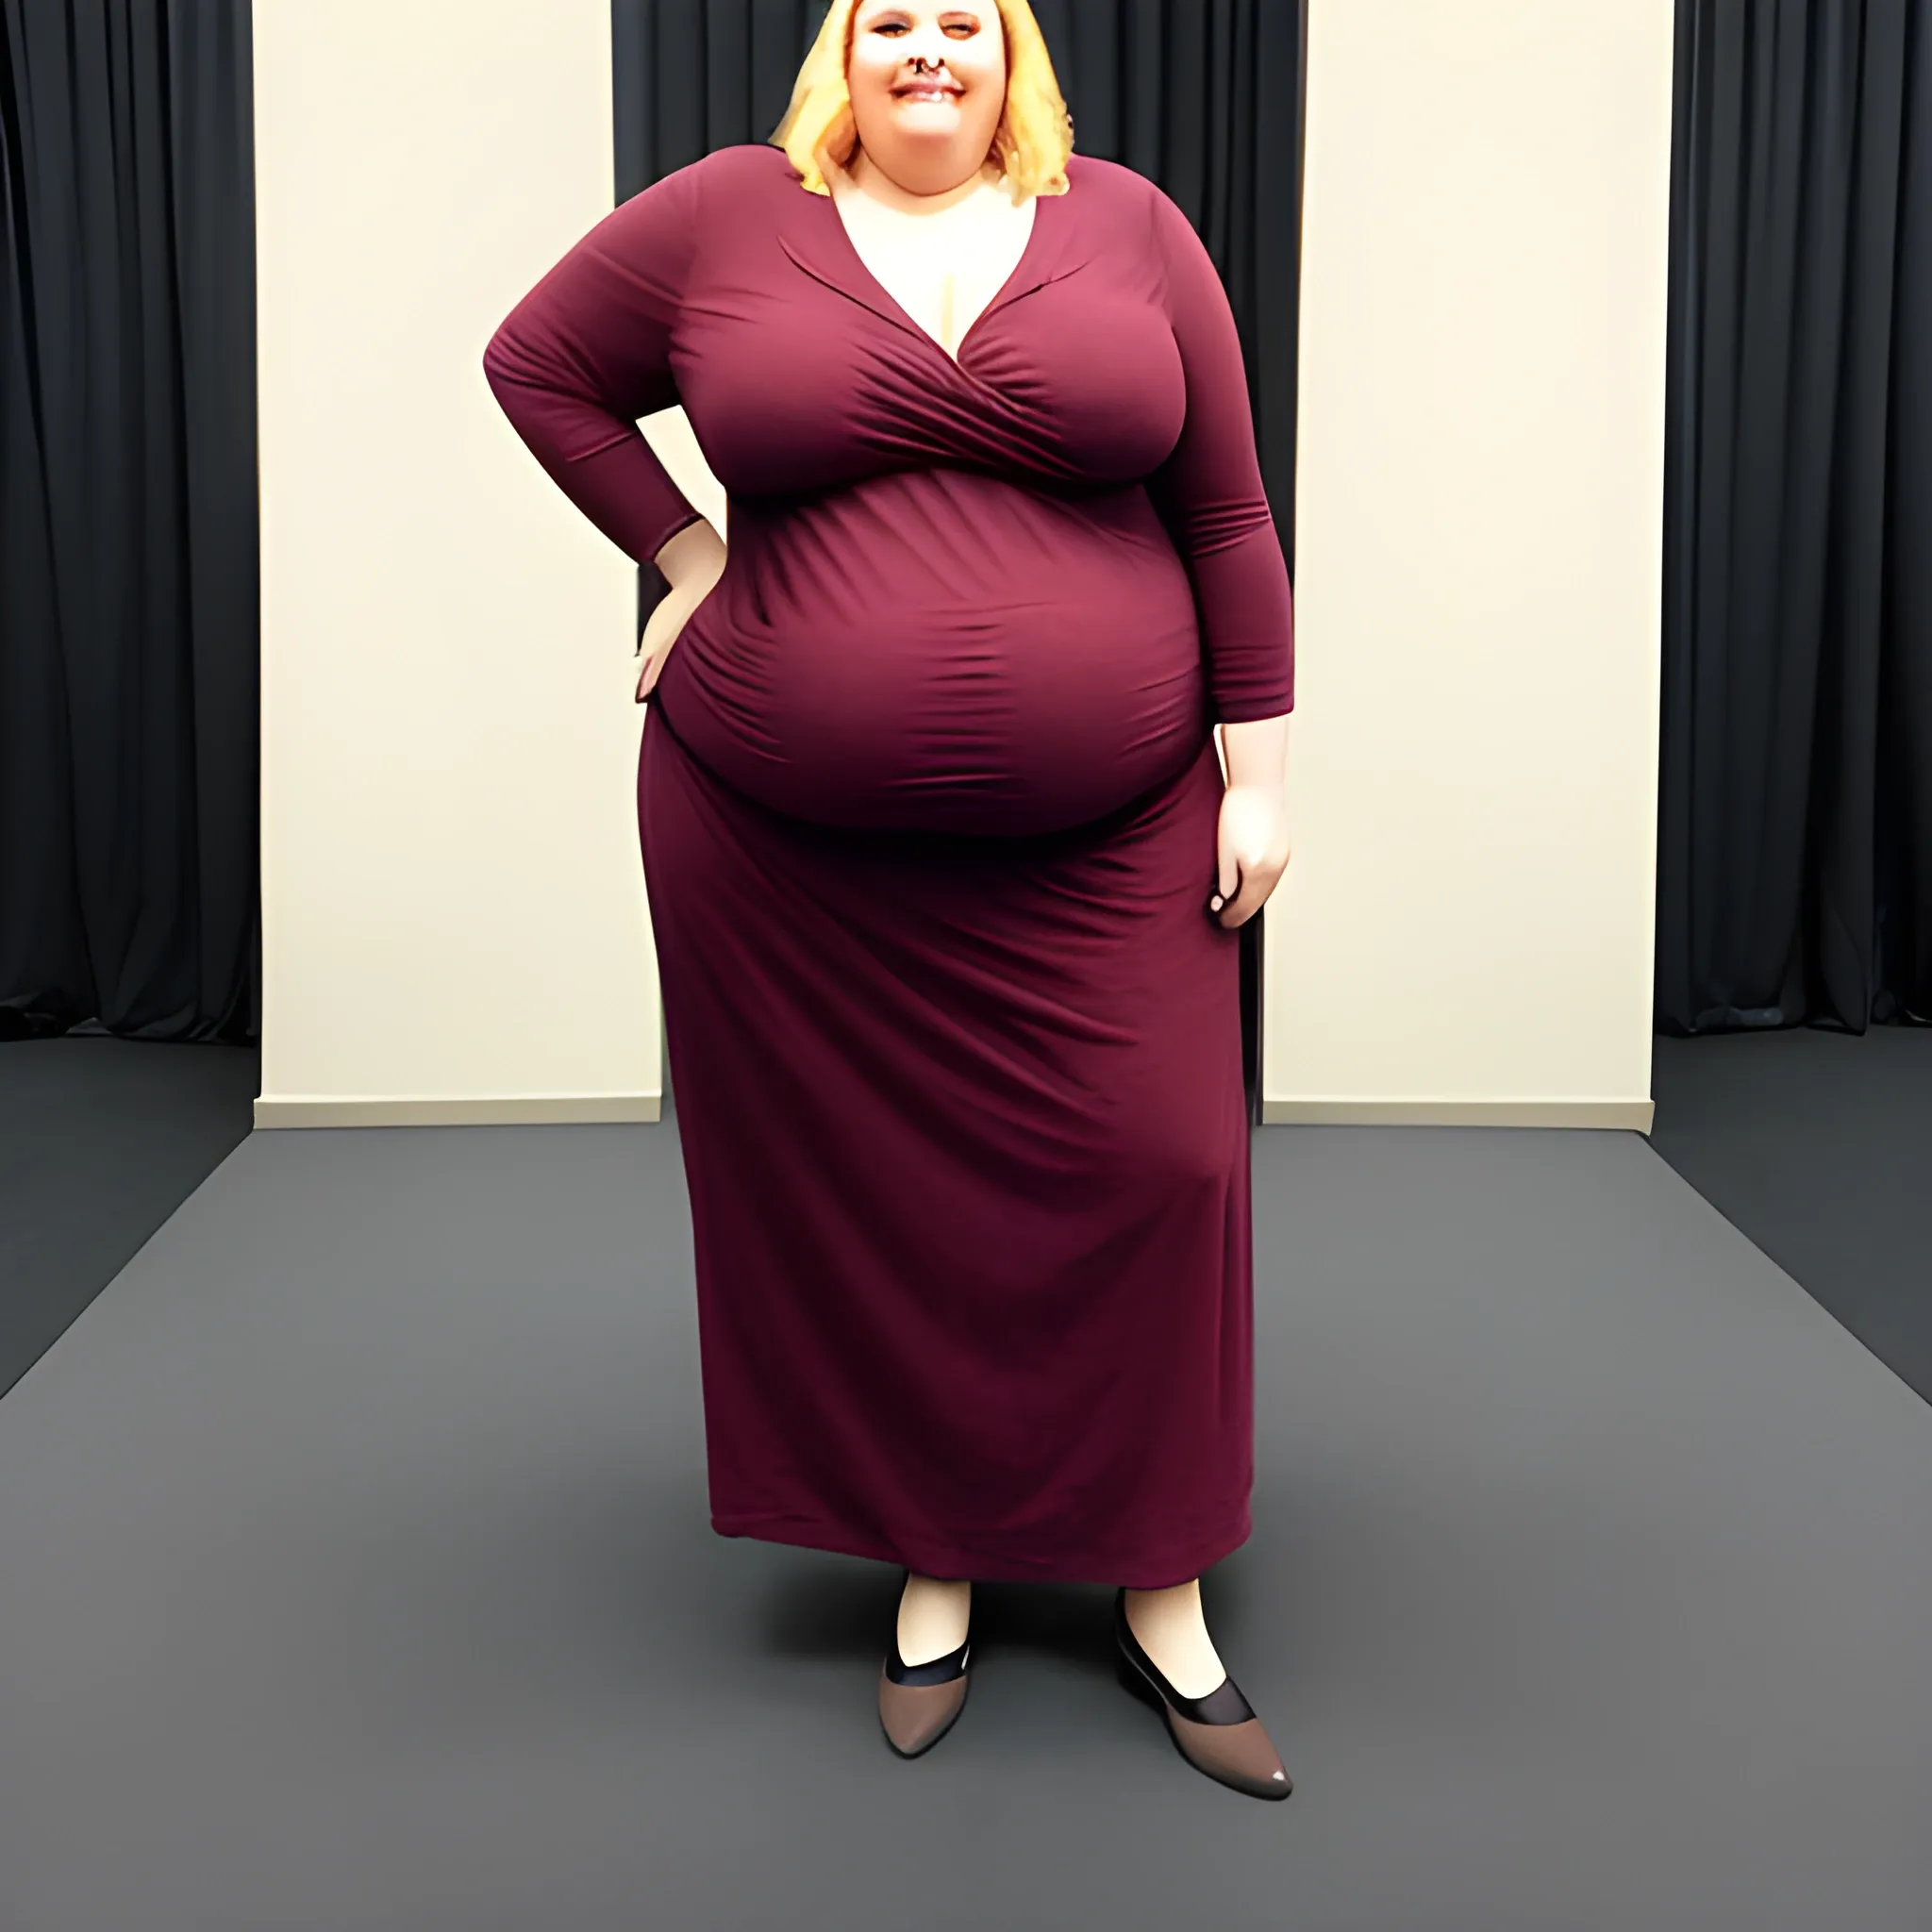 A tall fat woman
